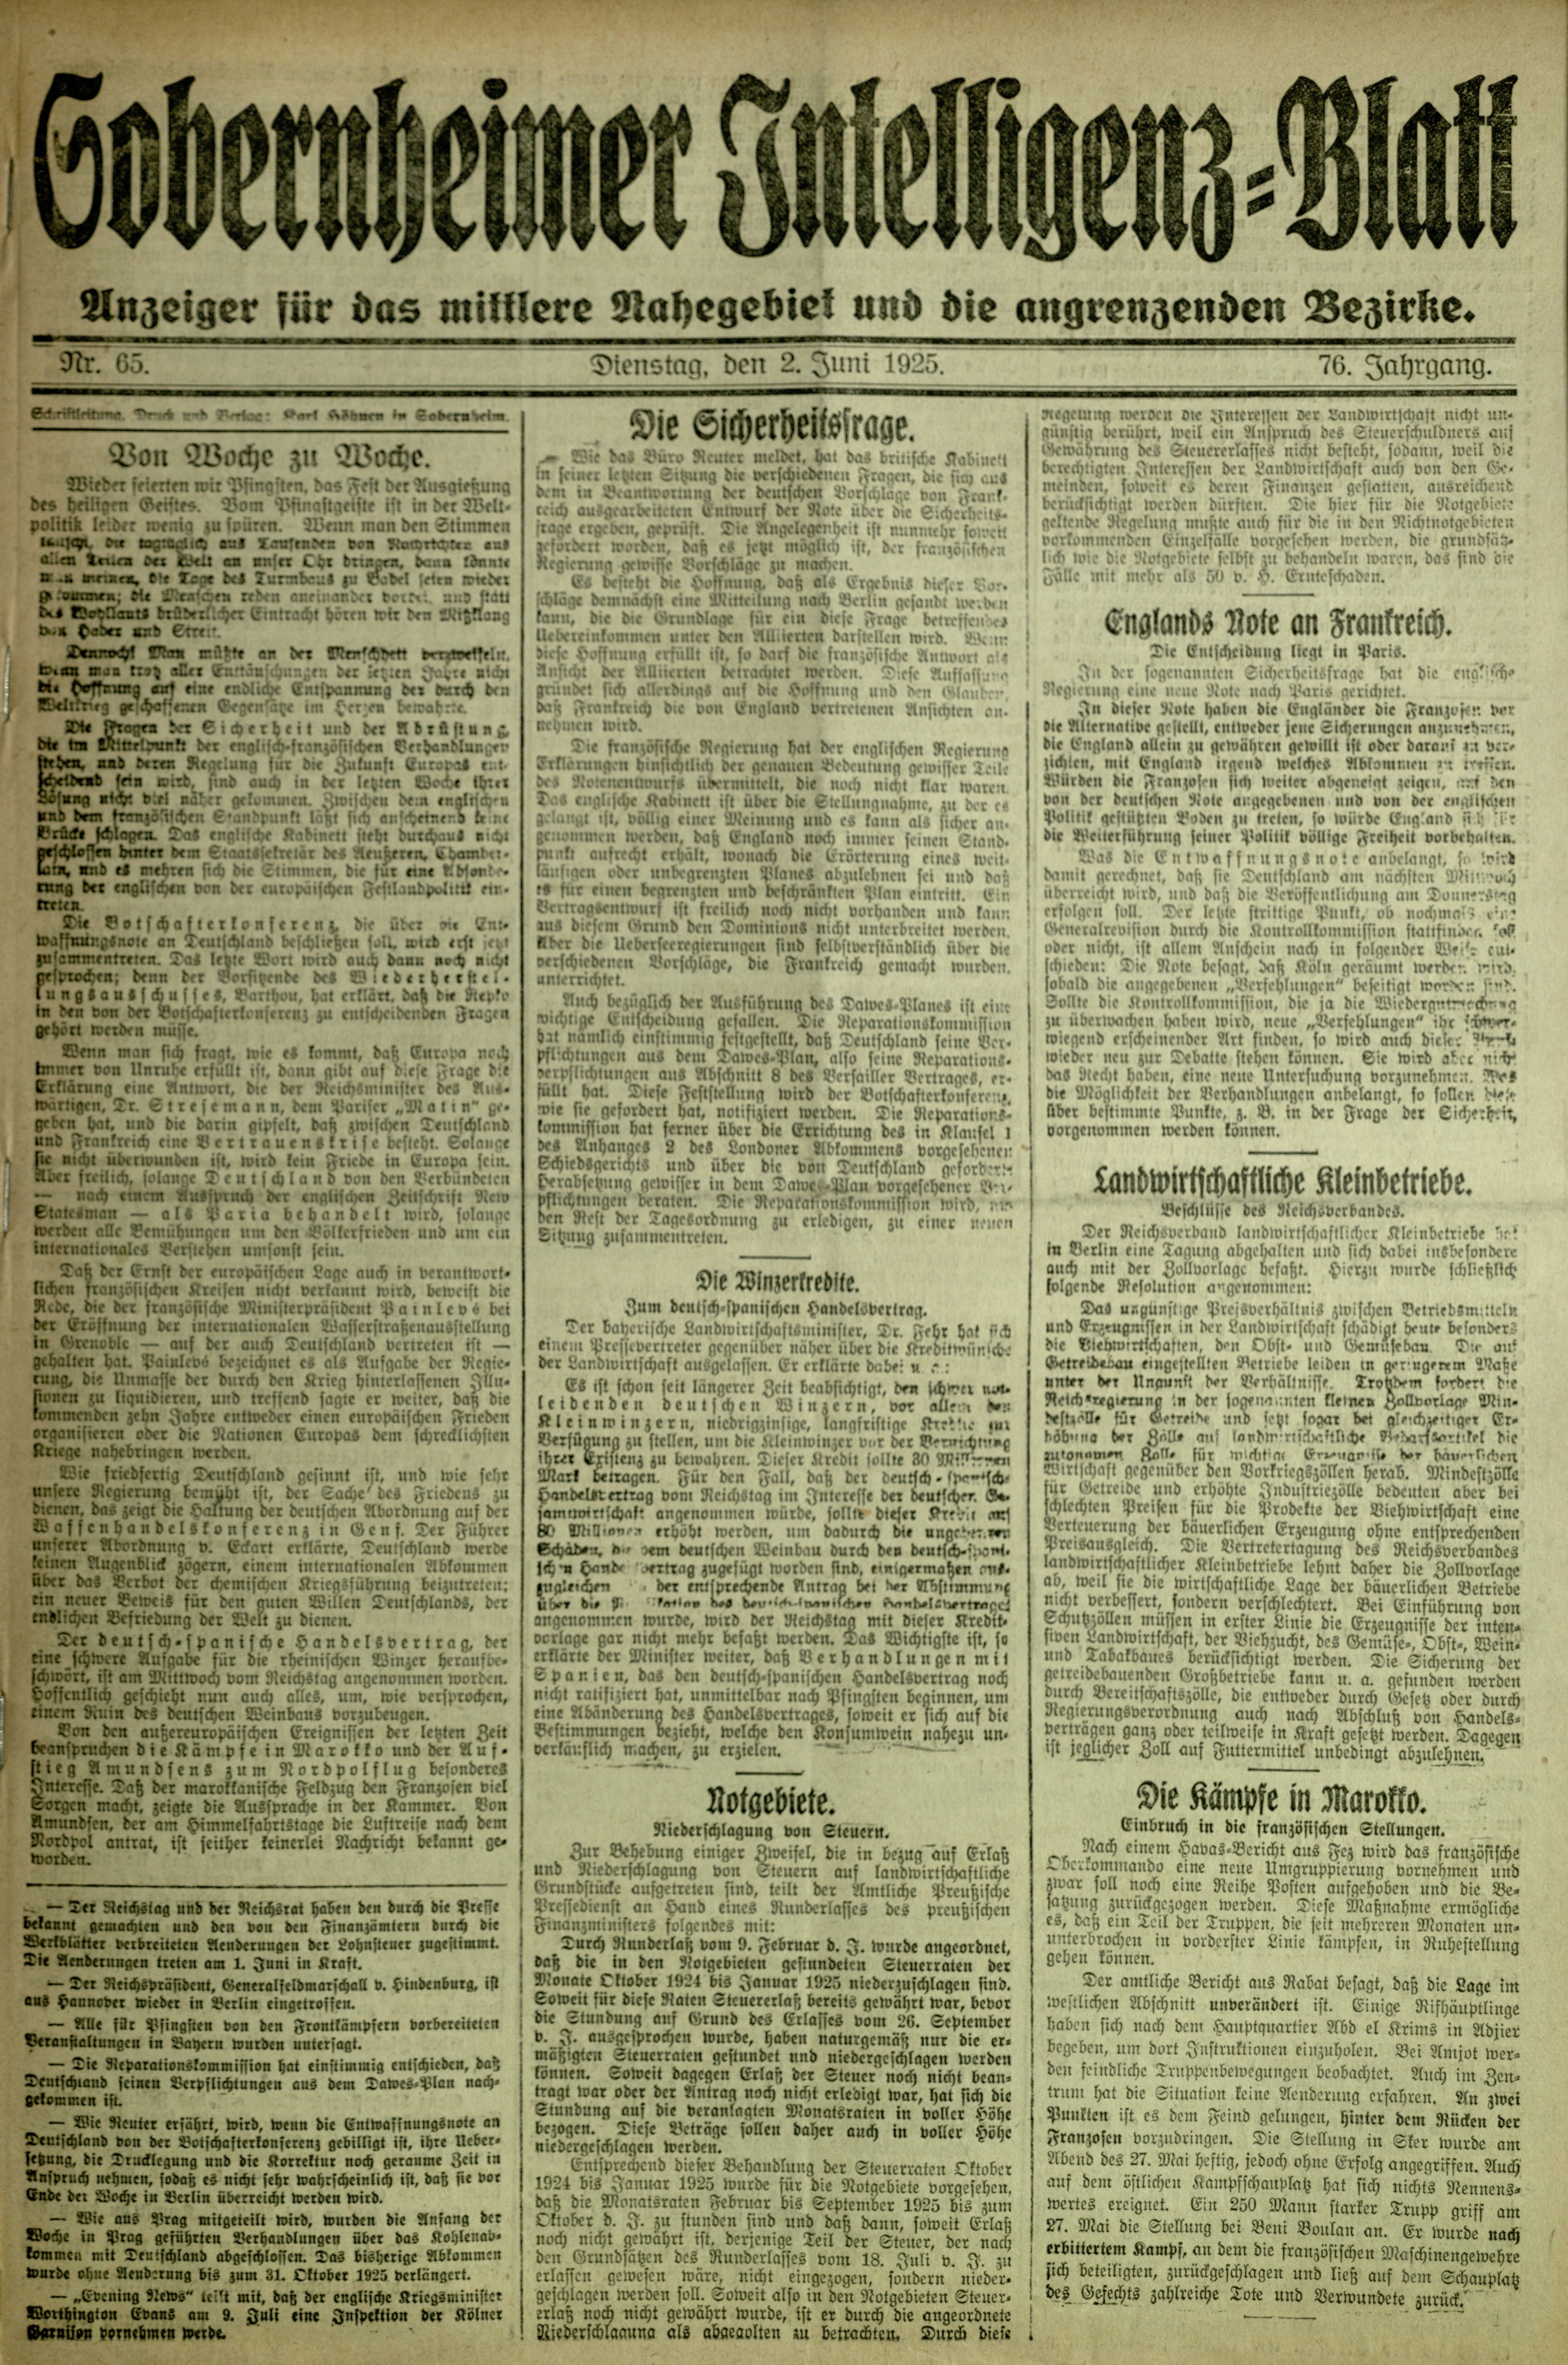 Zeitung: Sobernheimer Intelligenzblatt; Juni 1925, Jg. 73 Nr. 65 (Heimatmuseum Bad Sobernheim CC BY-NC-SA)